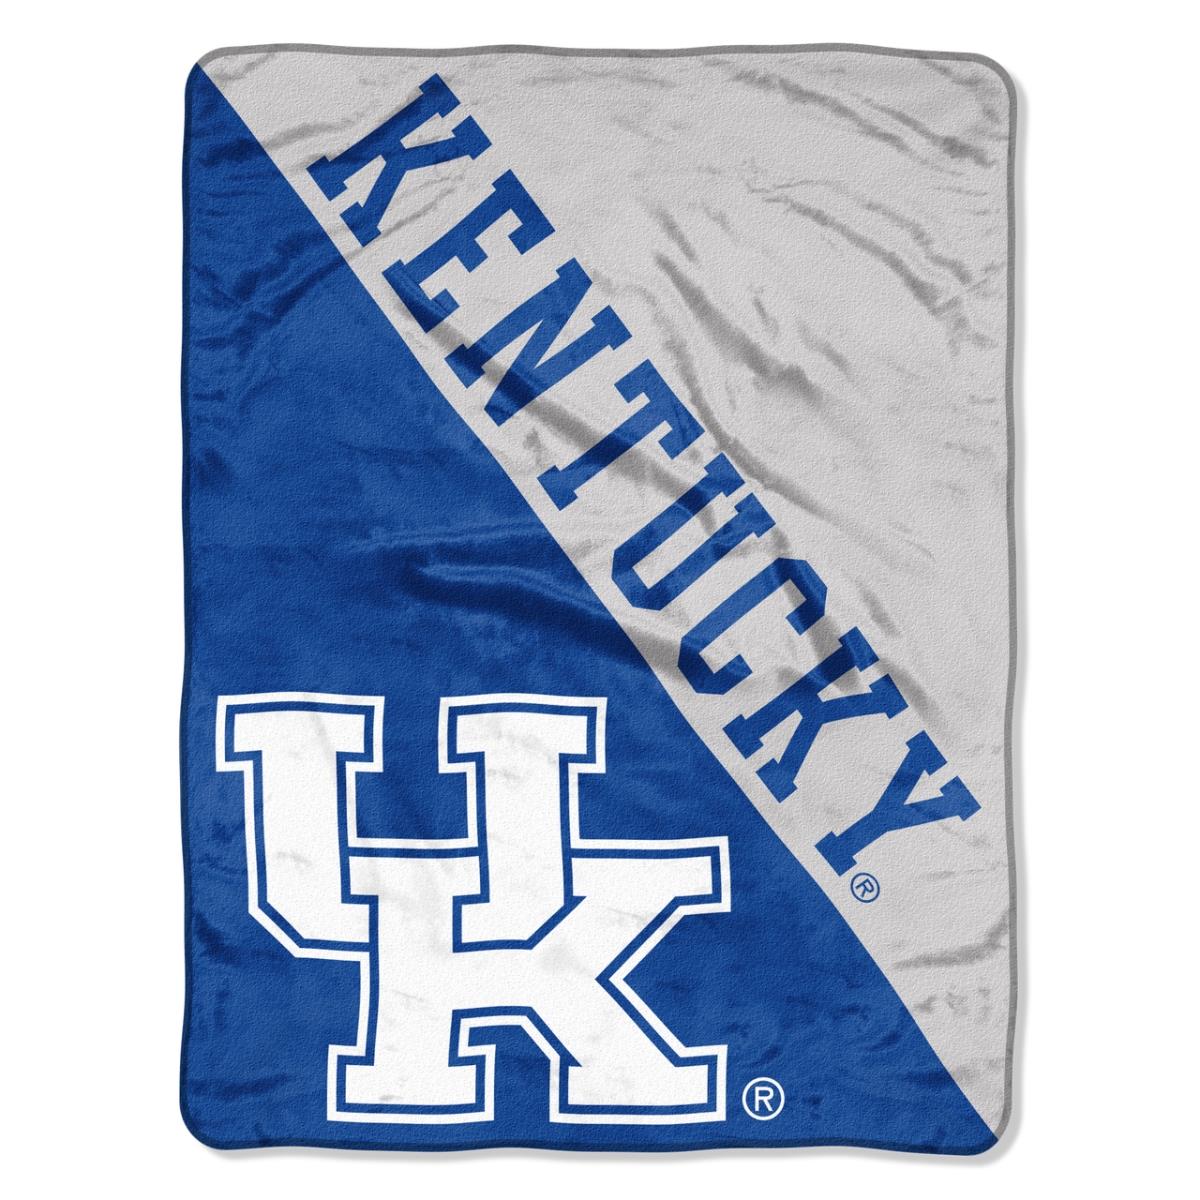 Picture of Kentucky Wildcats Blanket 46x60 Micro Raschel Halftone Design Rolled